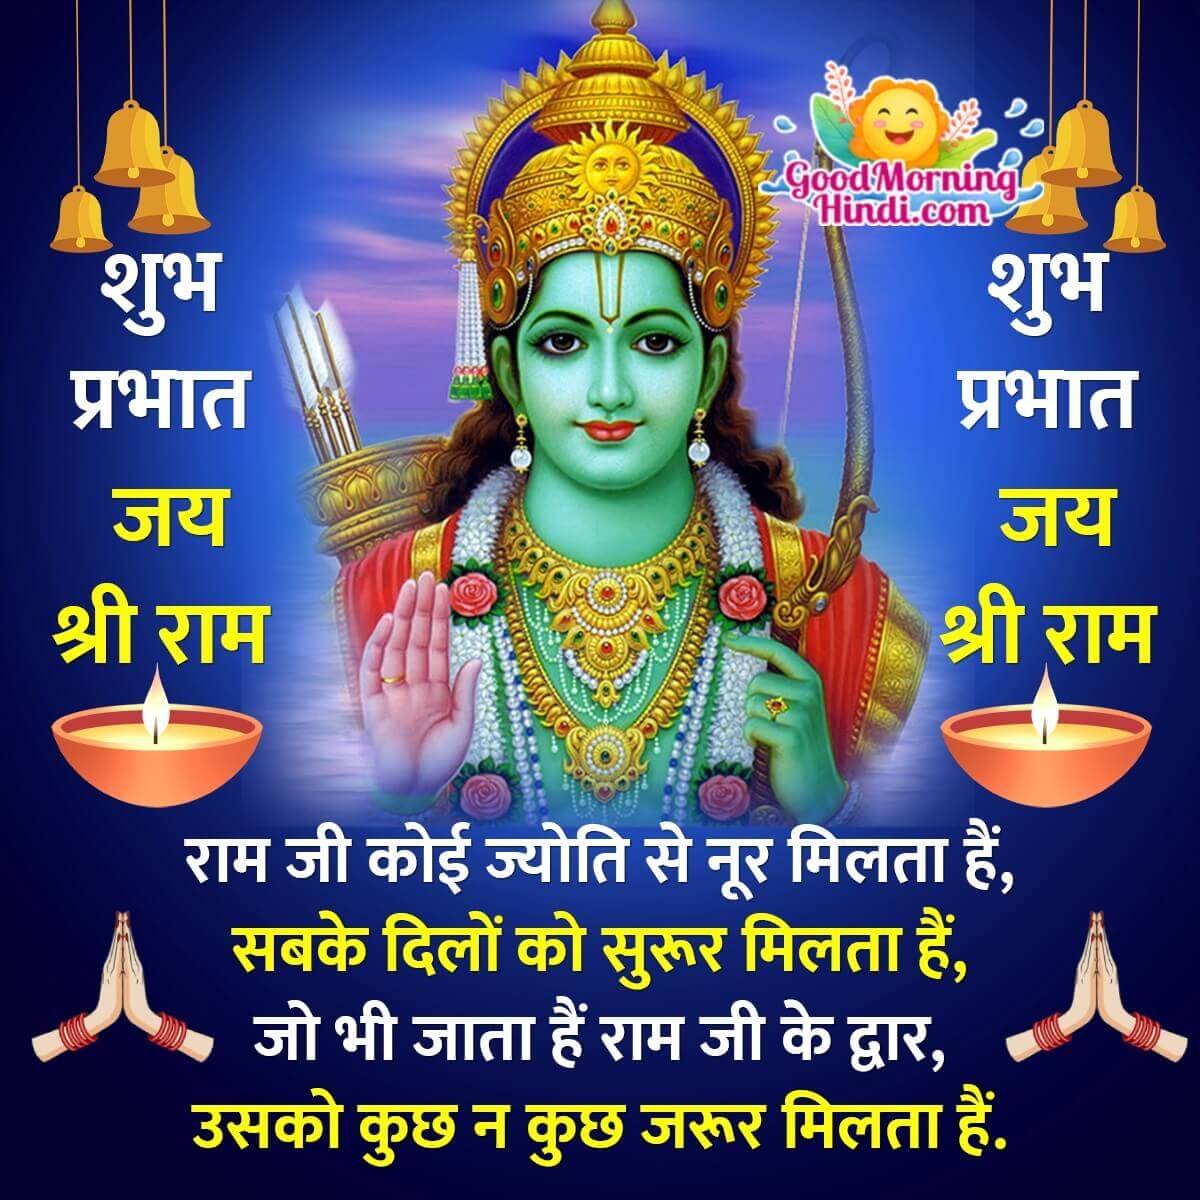 Good Morning Shri Ram Hindi Images